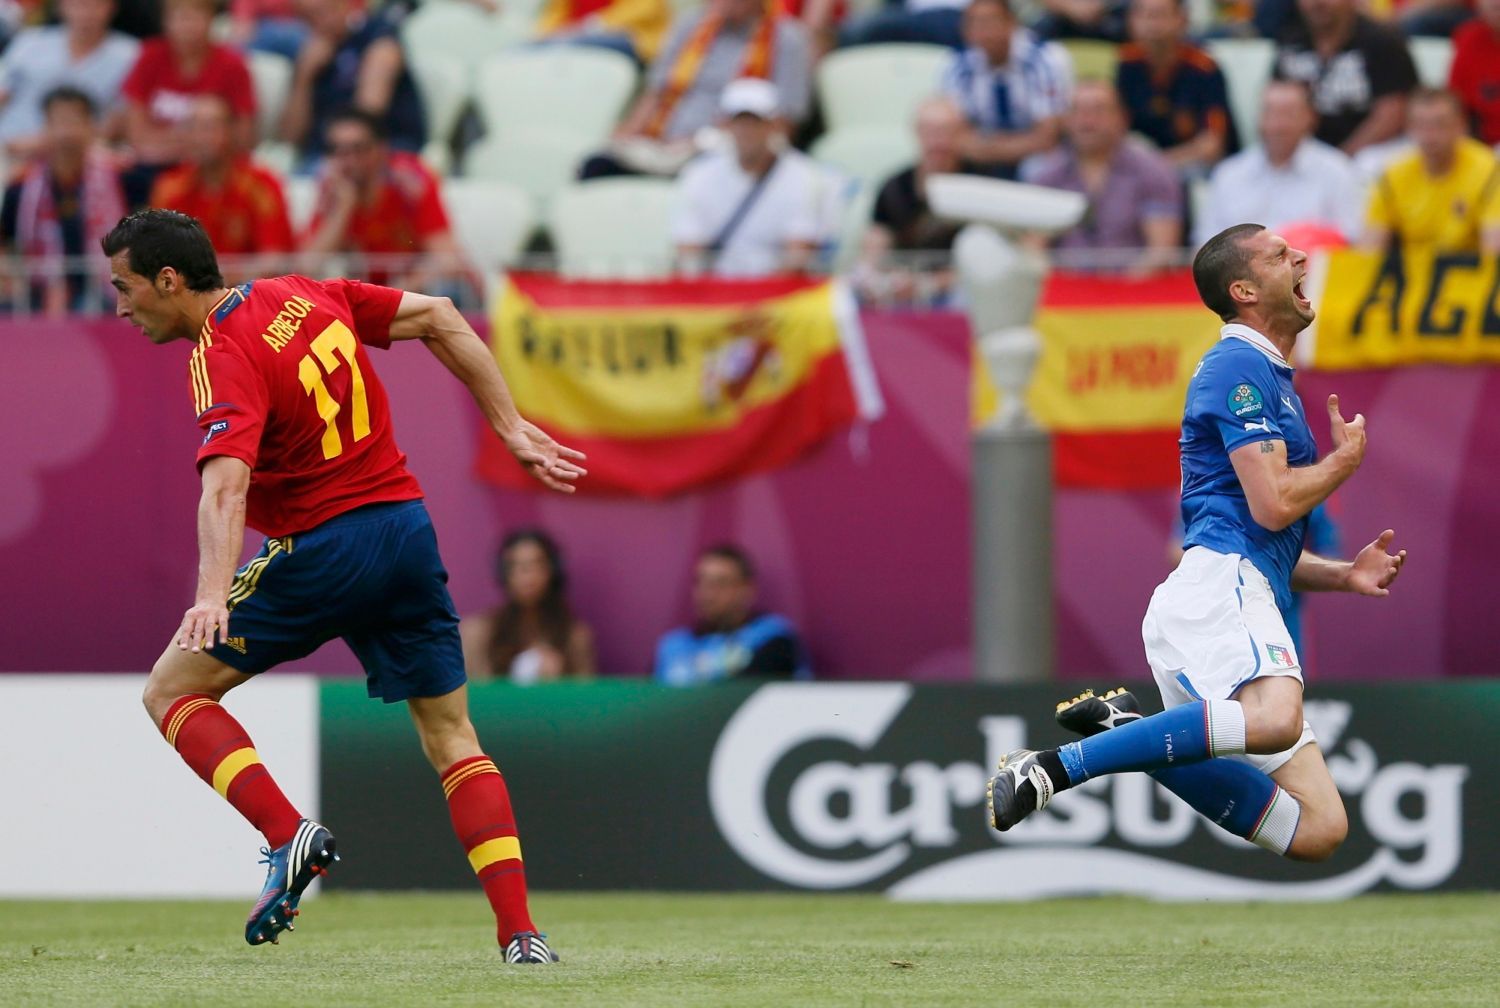 Alvaro Arbeloa fauluje Thiago Mottu v utkání základní skupiny mezi Španělskem a Itálií na Euru 2012